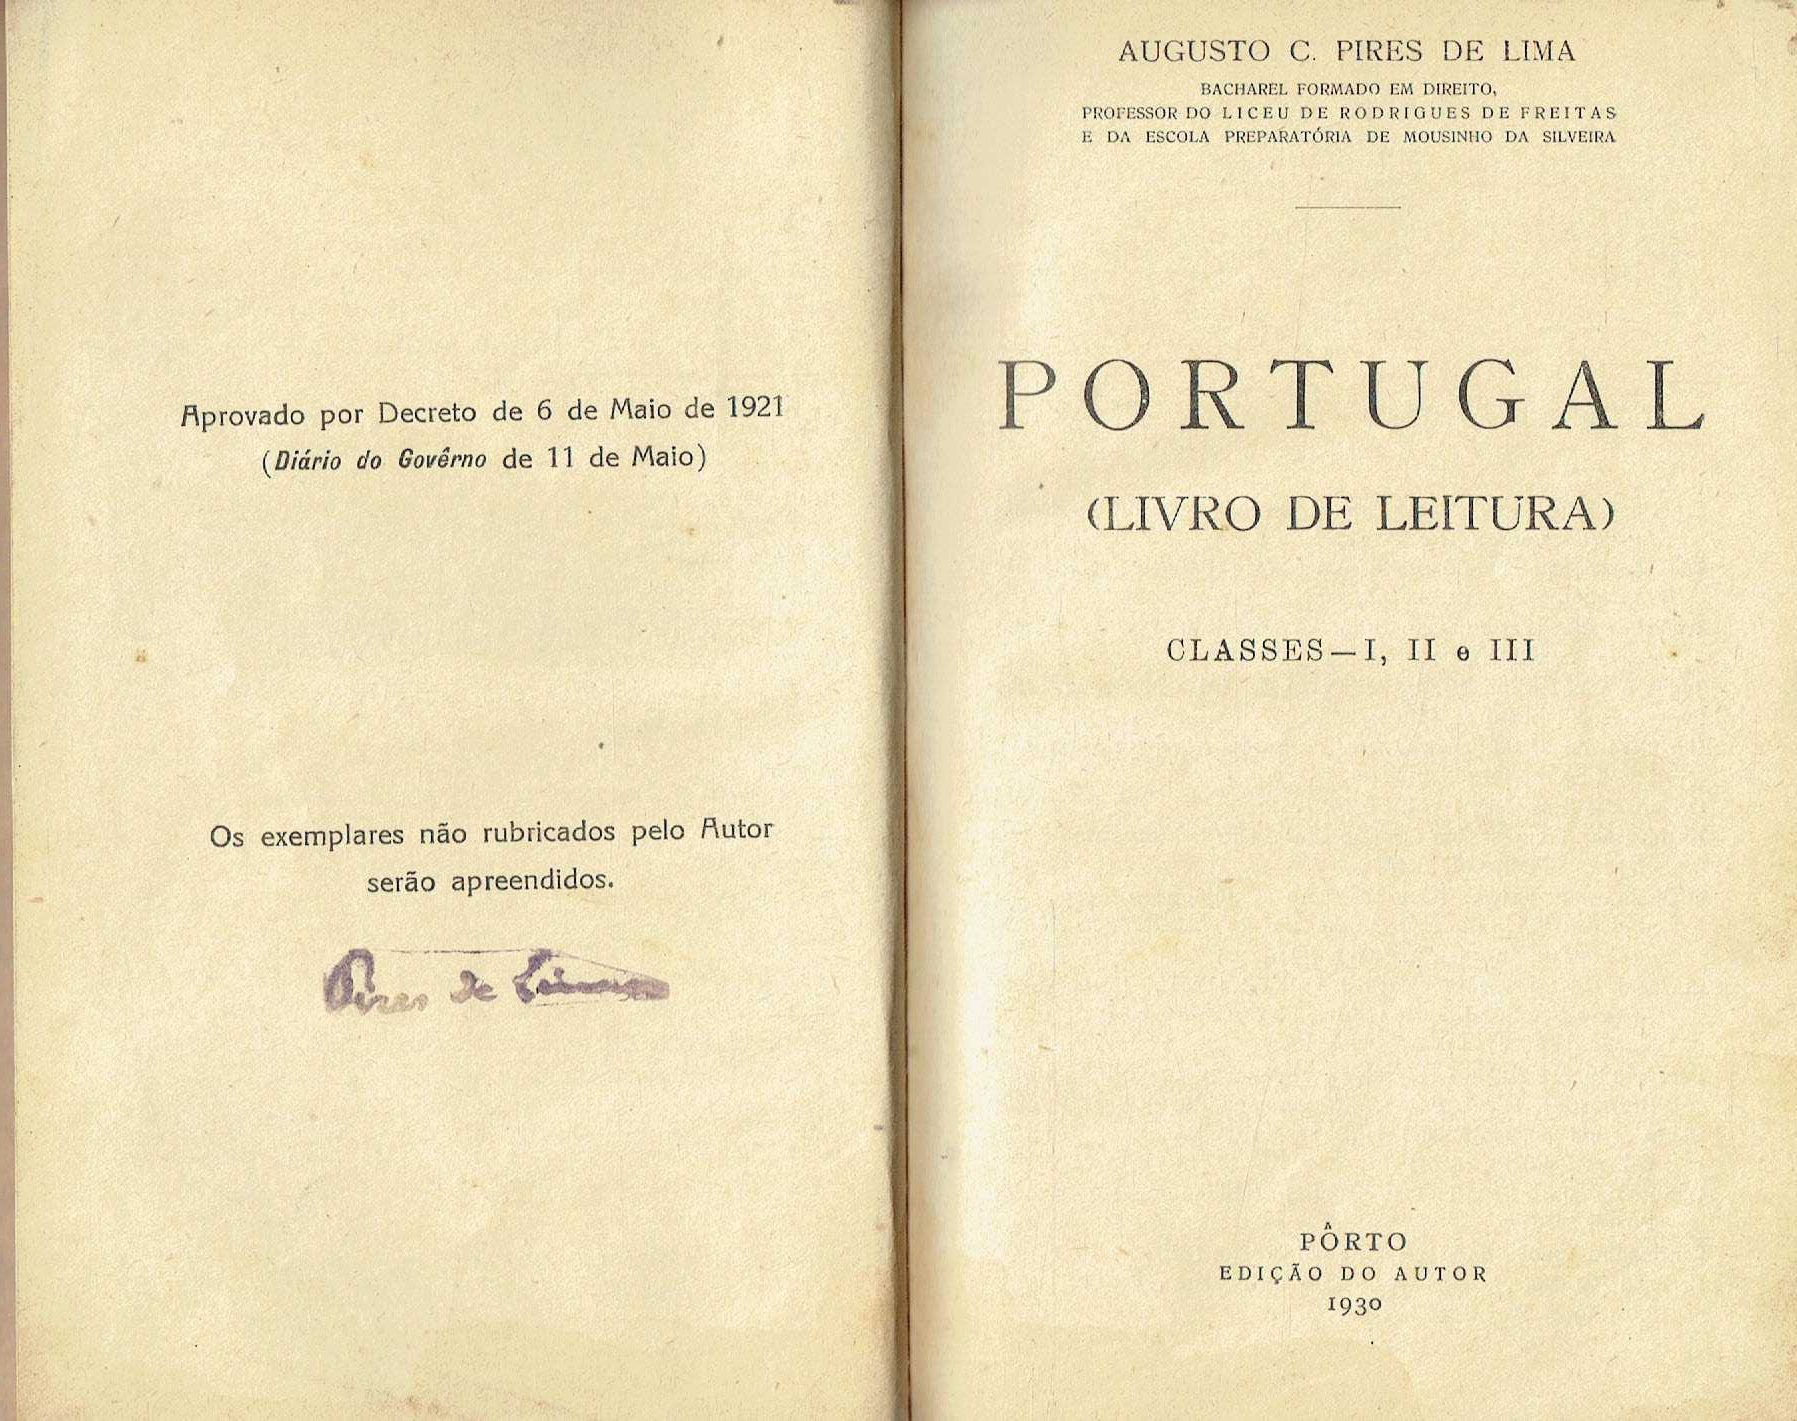 7686
Portugal. Livro de leitura-Classes I, II III
de A. Pires de Lima.